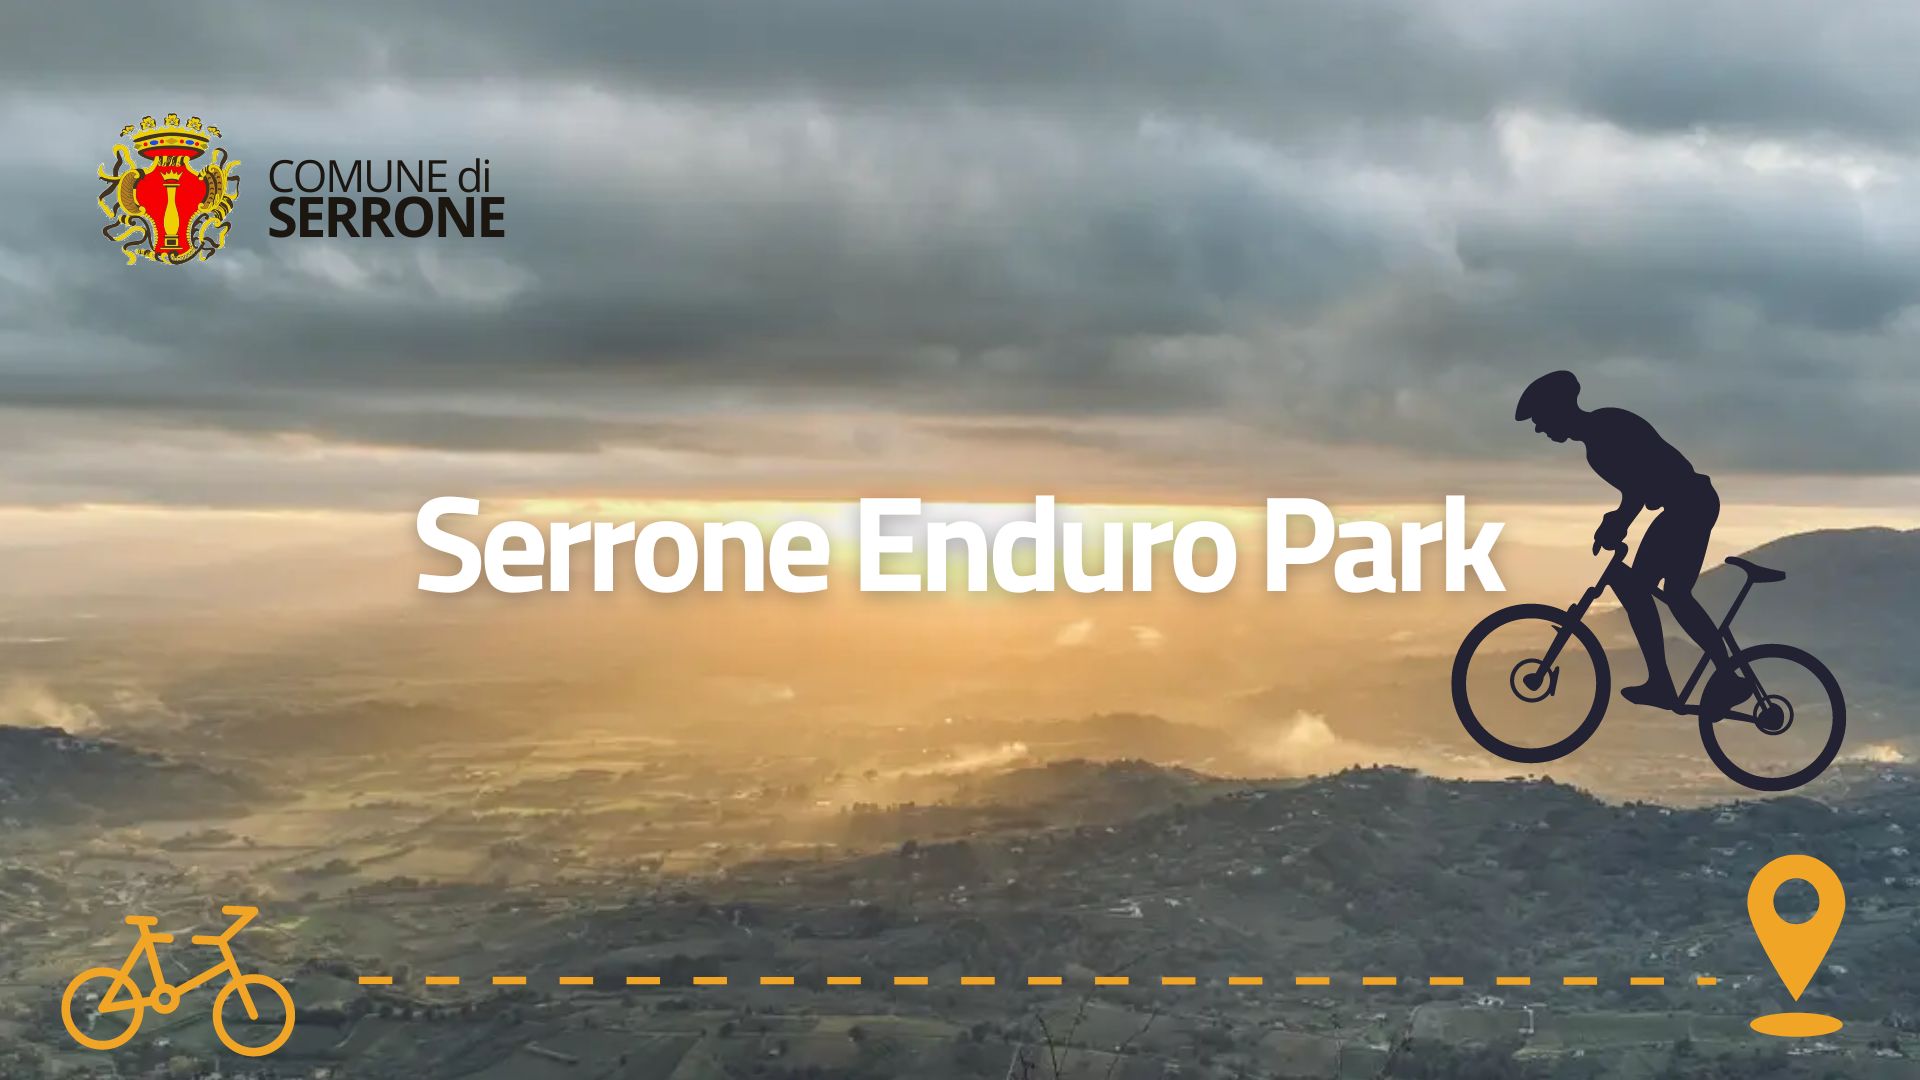 Serrone Enduro Park